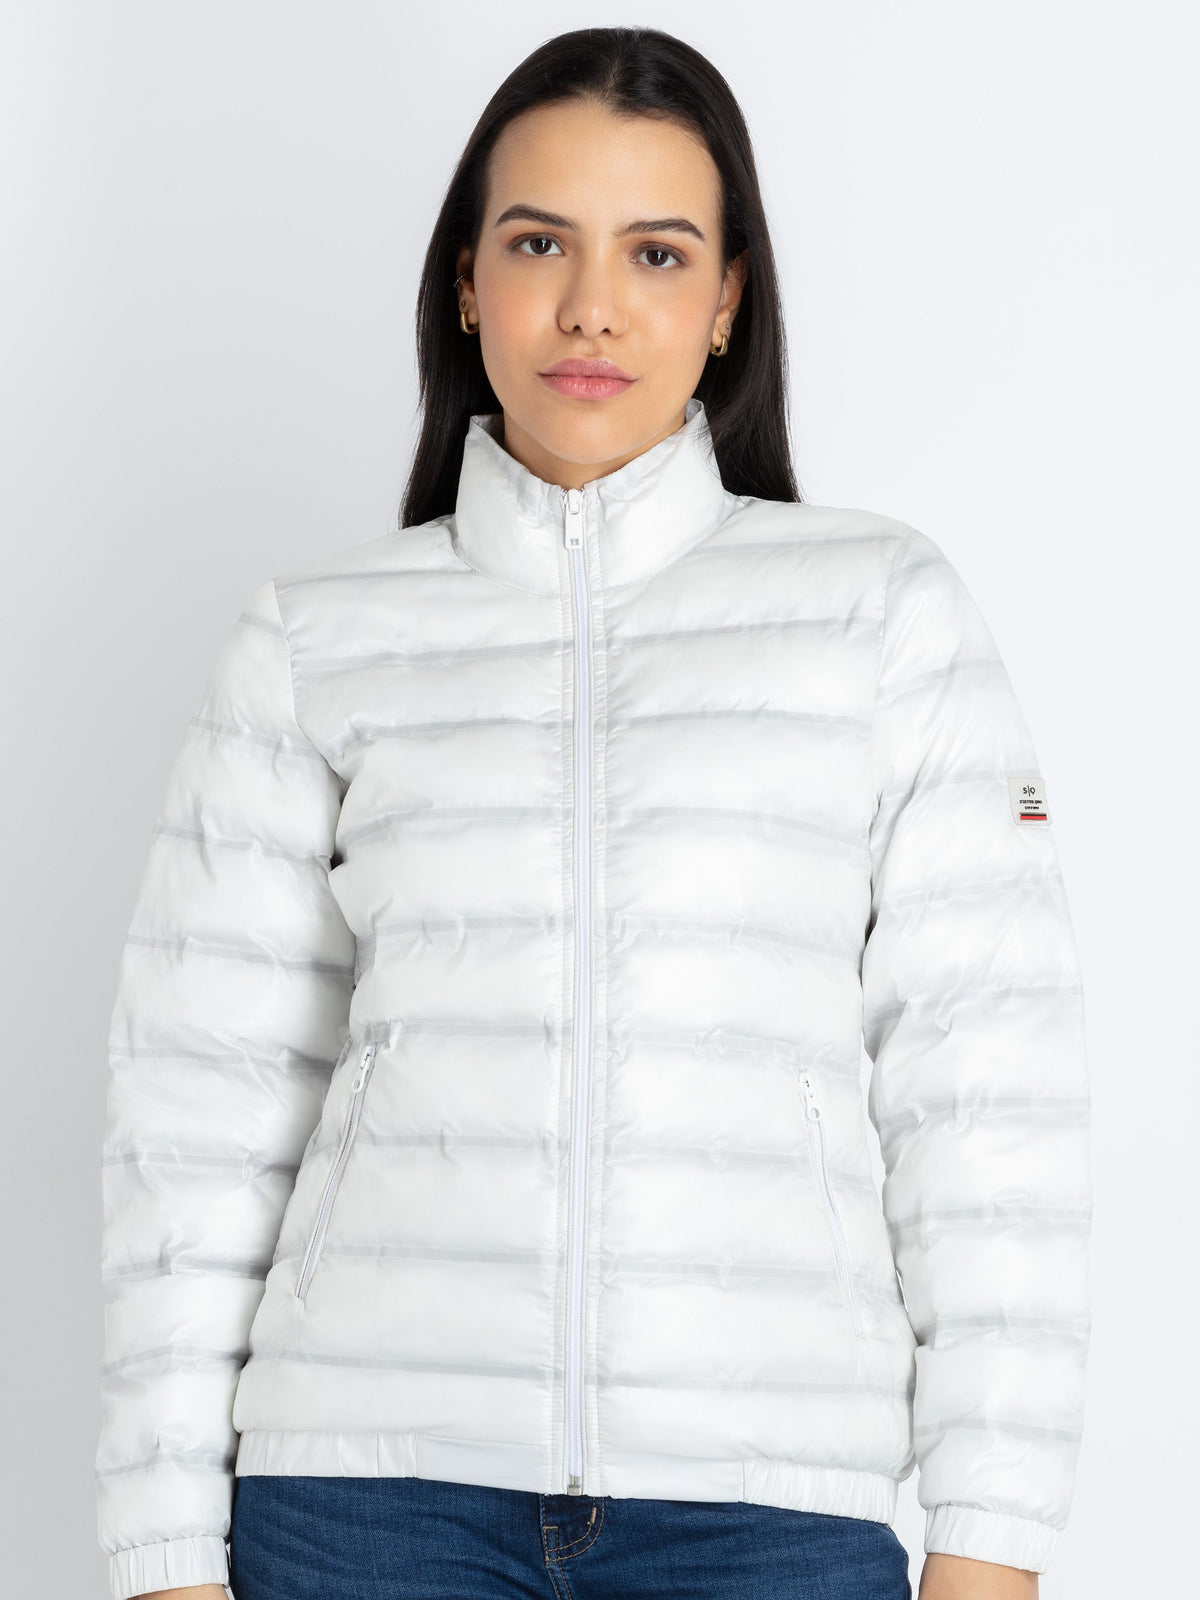 2023 Winter Women's Down Jackets Warm Casual Coat Hooded Female Puffer  Jacket Cotton Padded Parka Windproof Warm Outwear - AliExpress